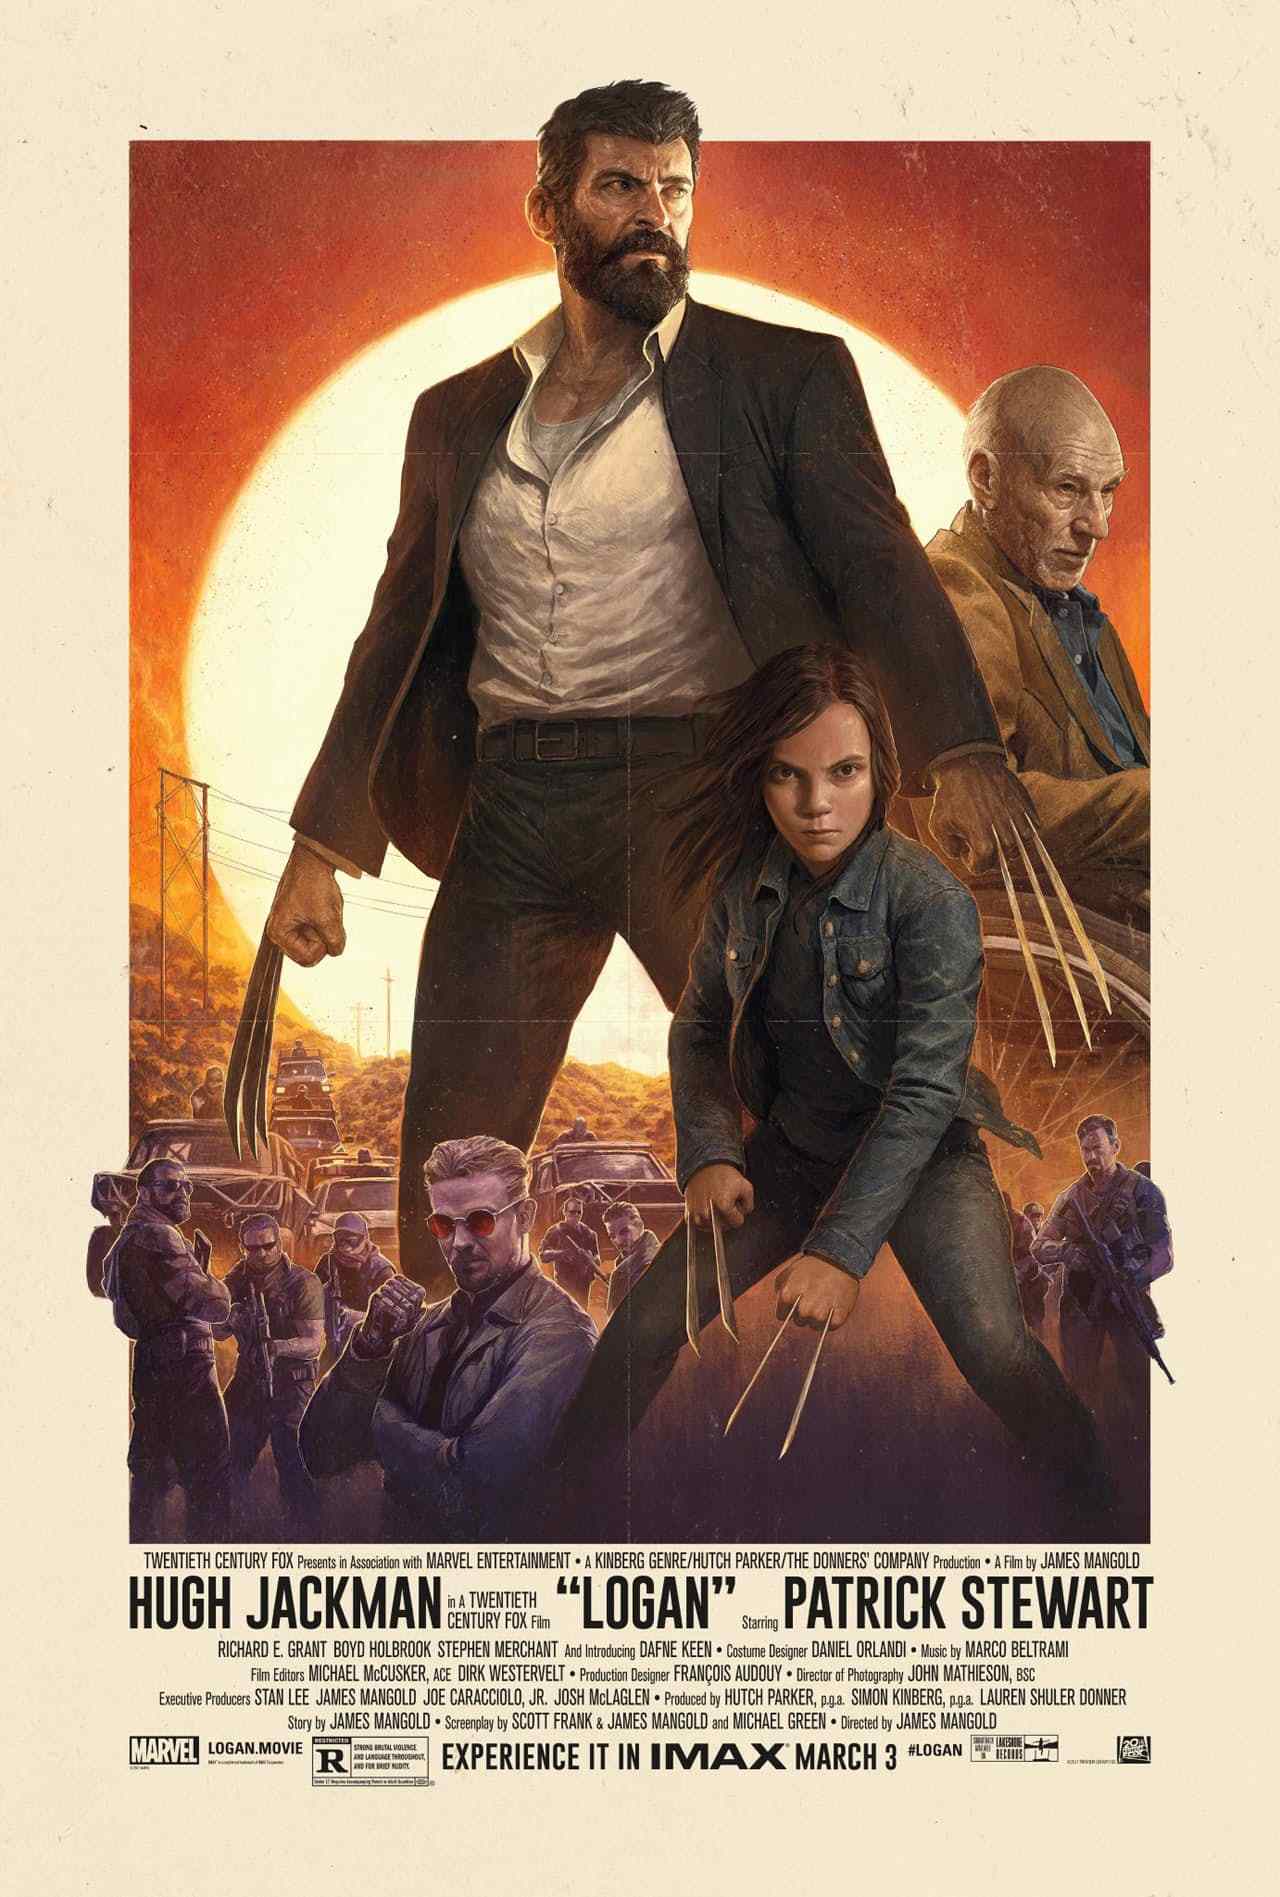 Logan film poster